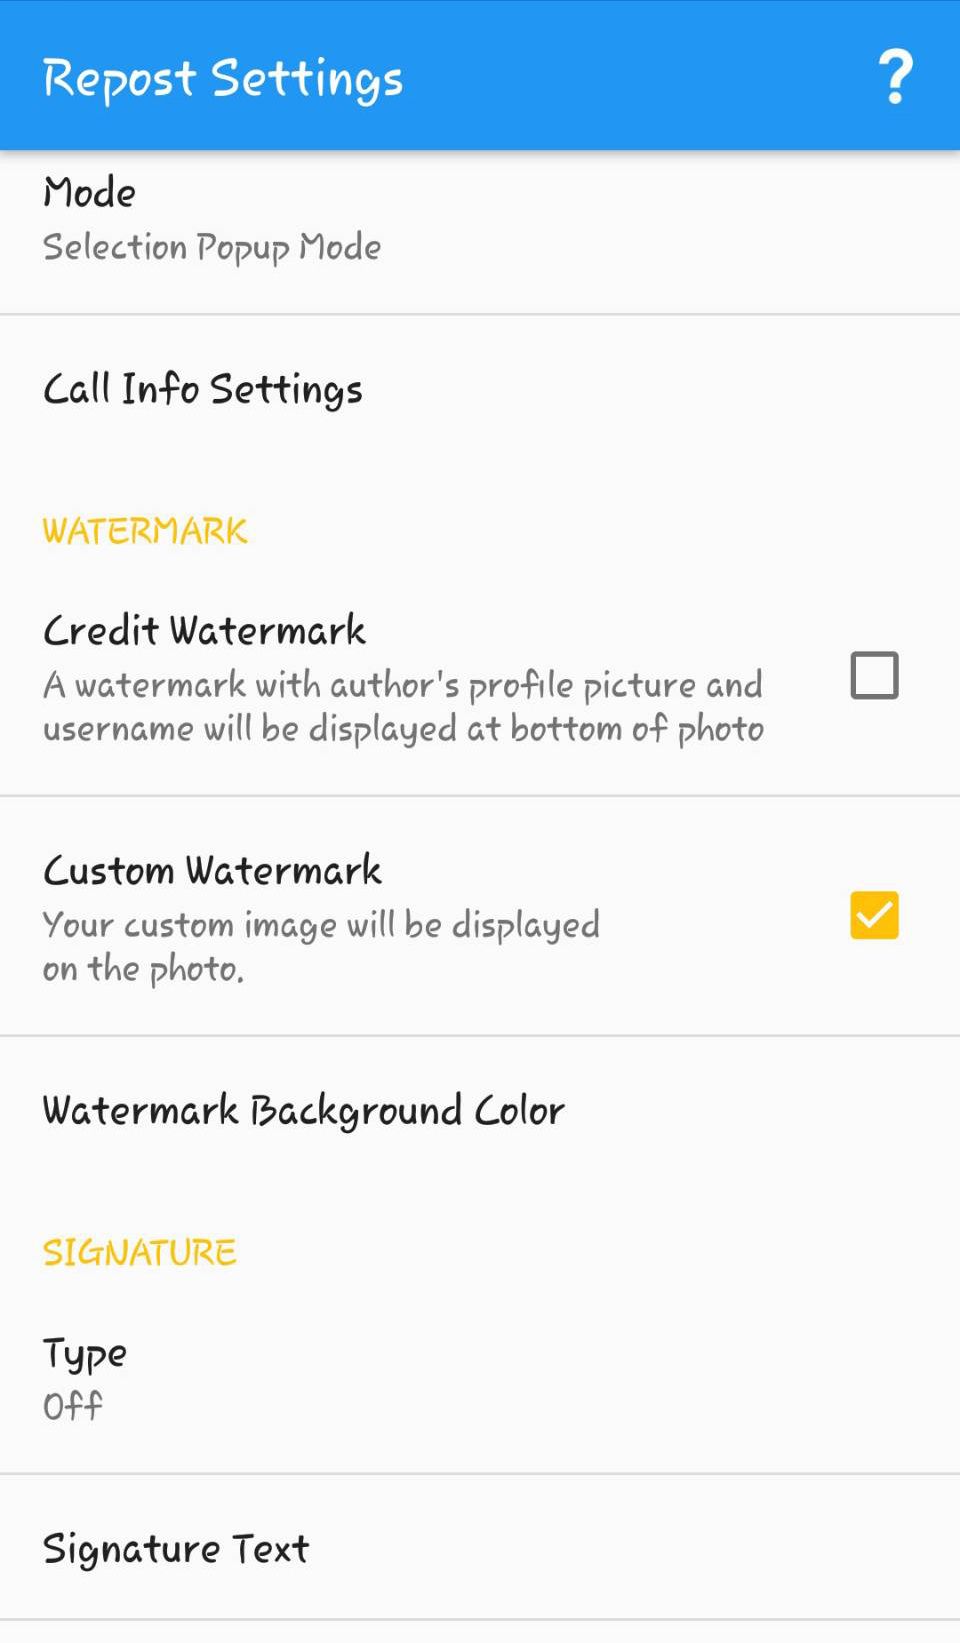 Regrann settings for Instagram reposting